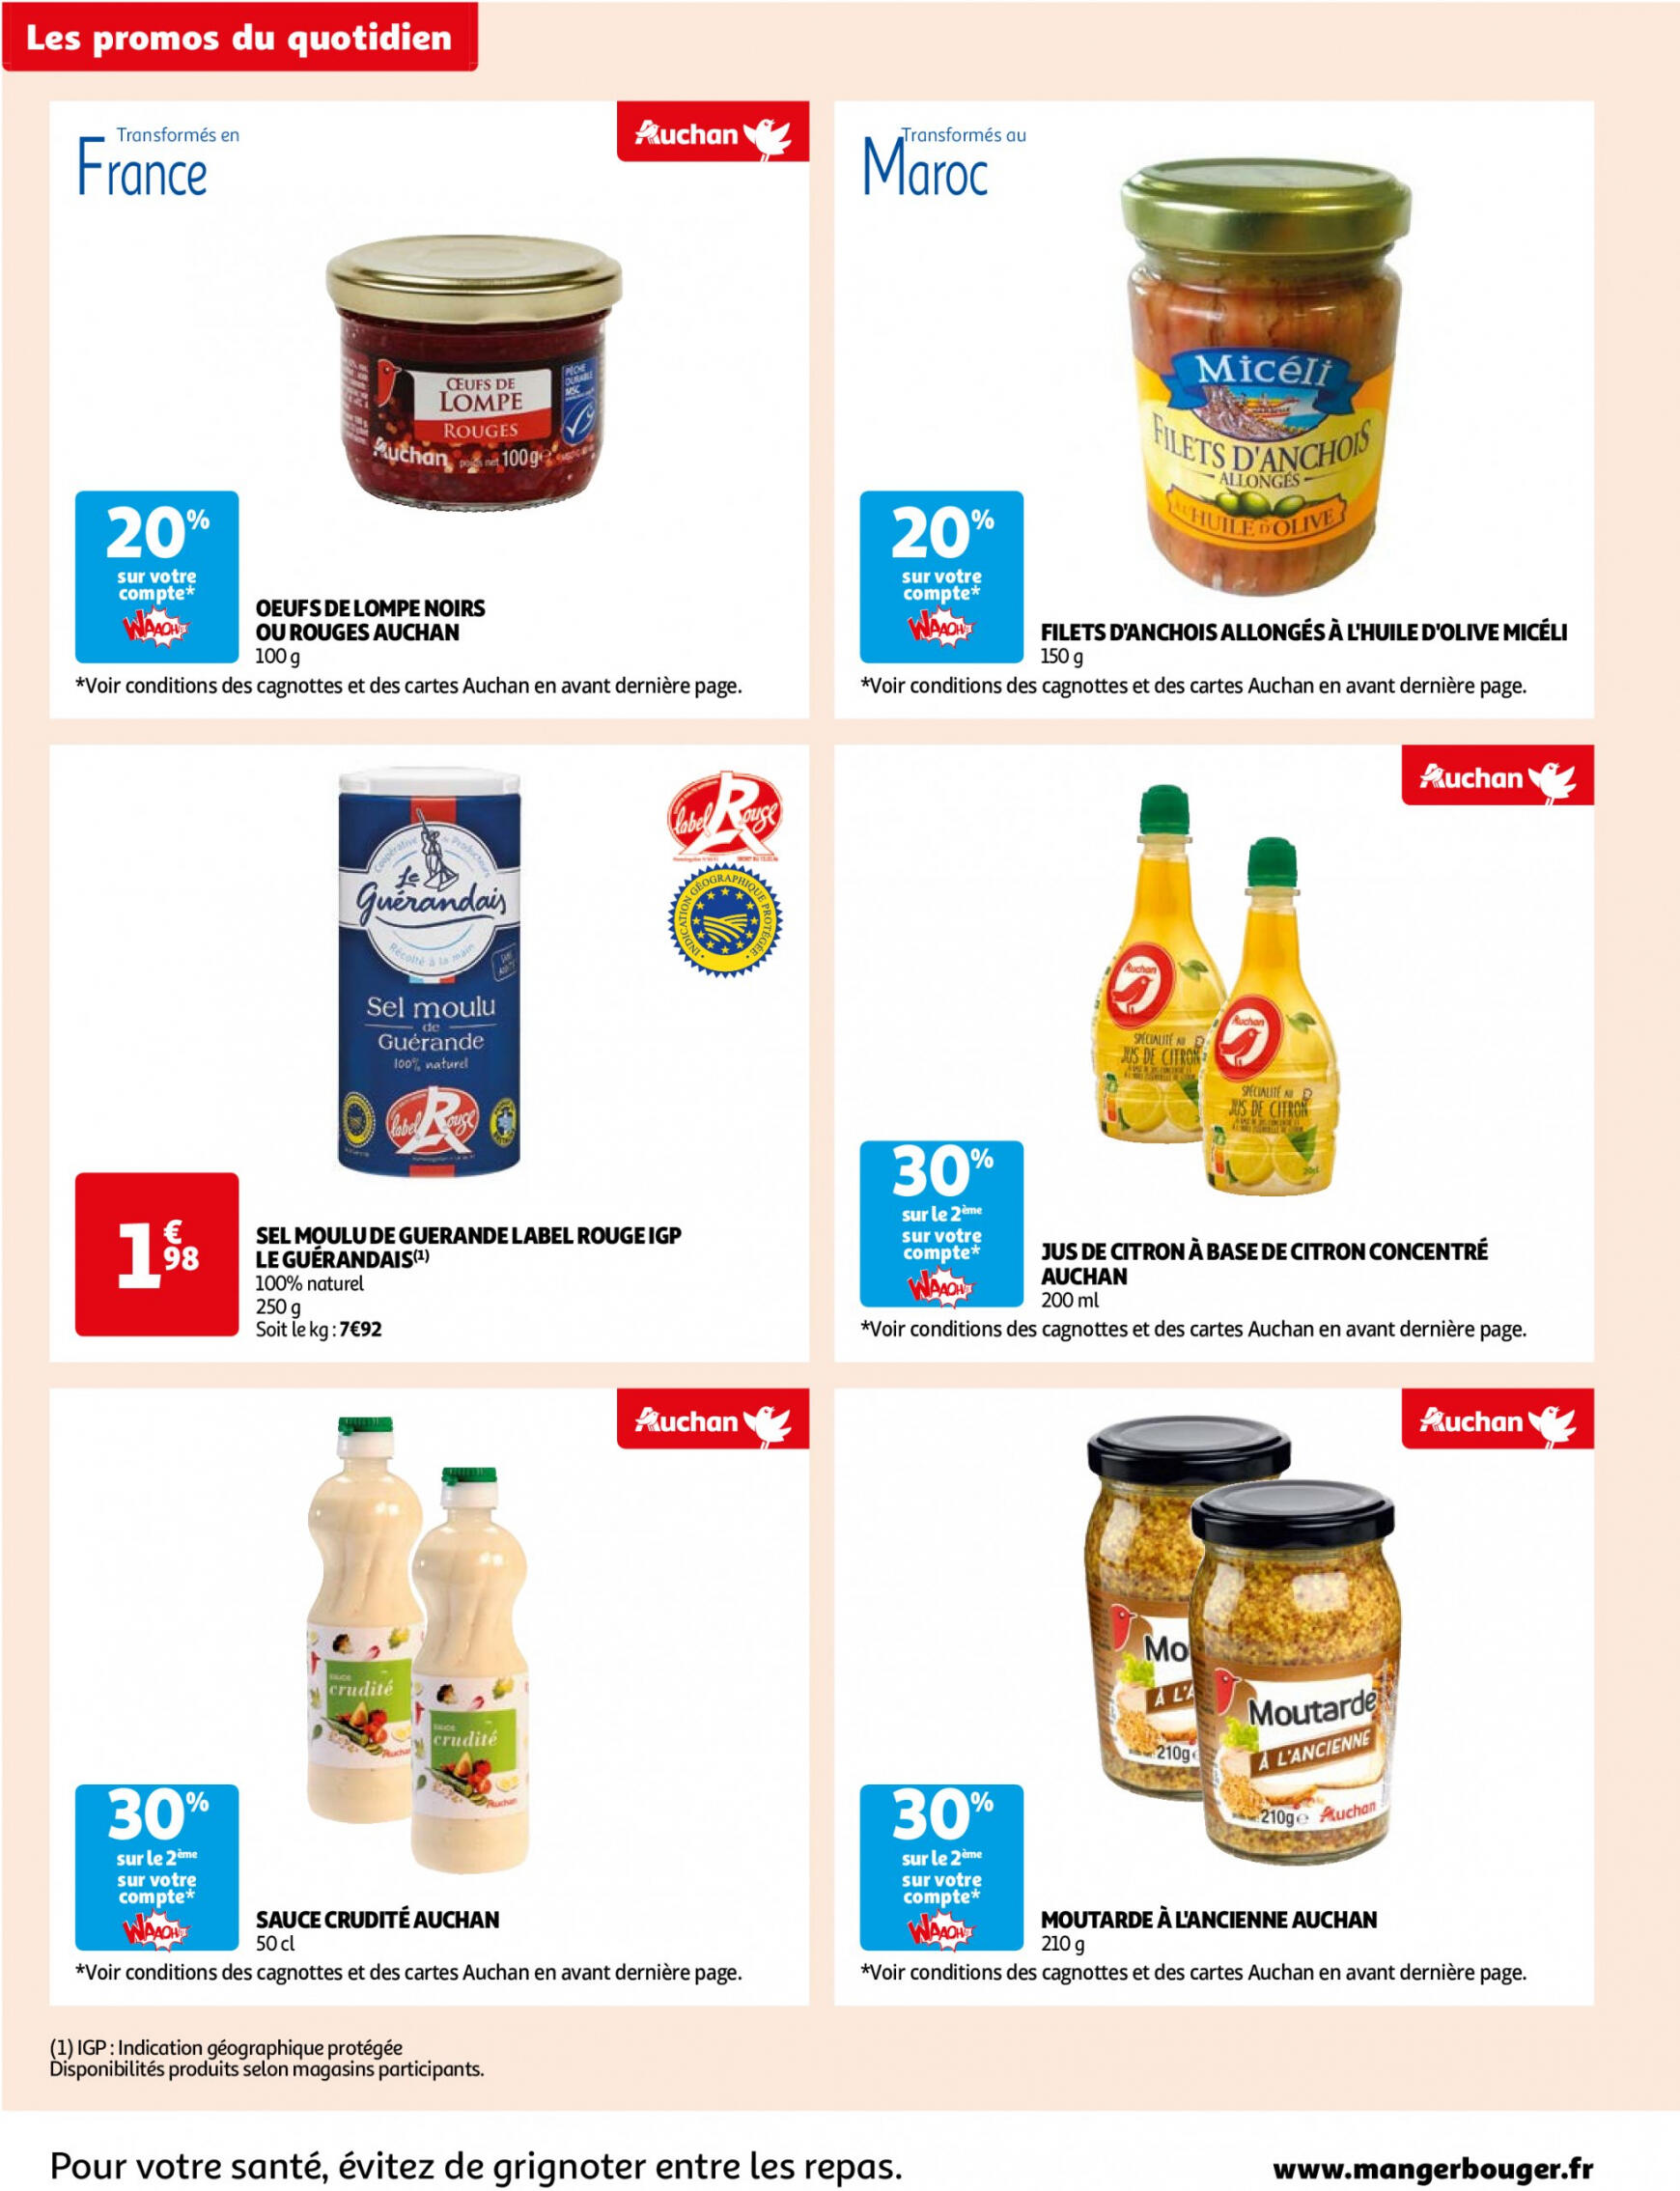 auchan - Prospectus Auchan Supermarché - Des économies au quotidien dans votre super actuel 14.05. - 02.06. - page: 2